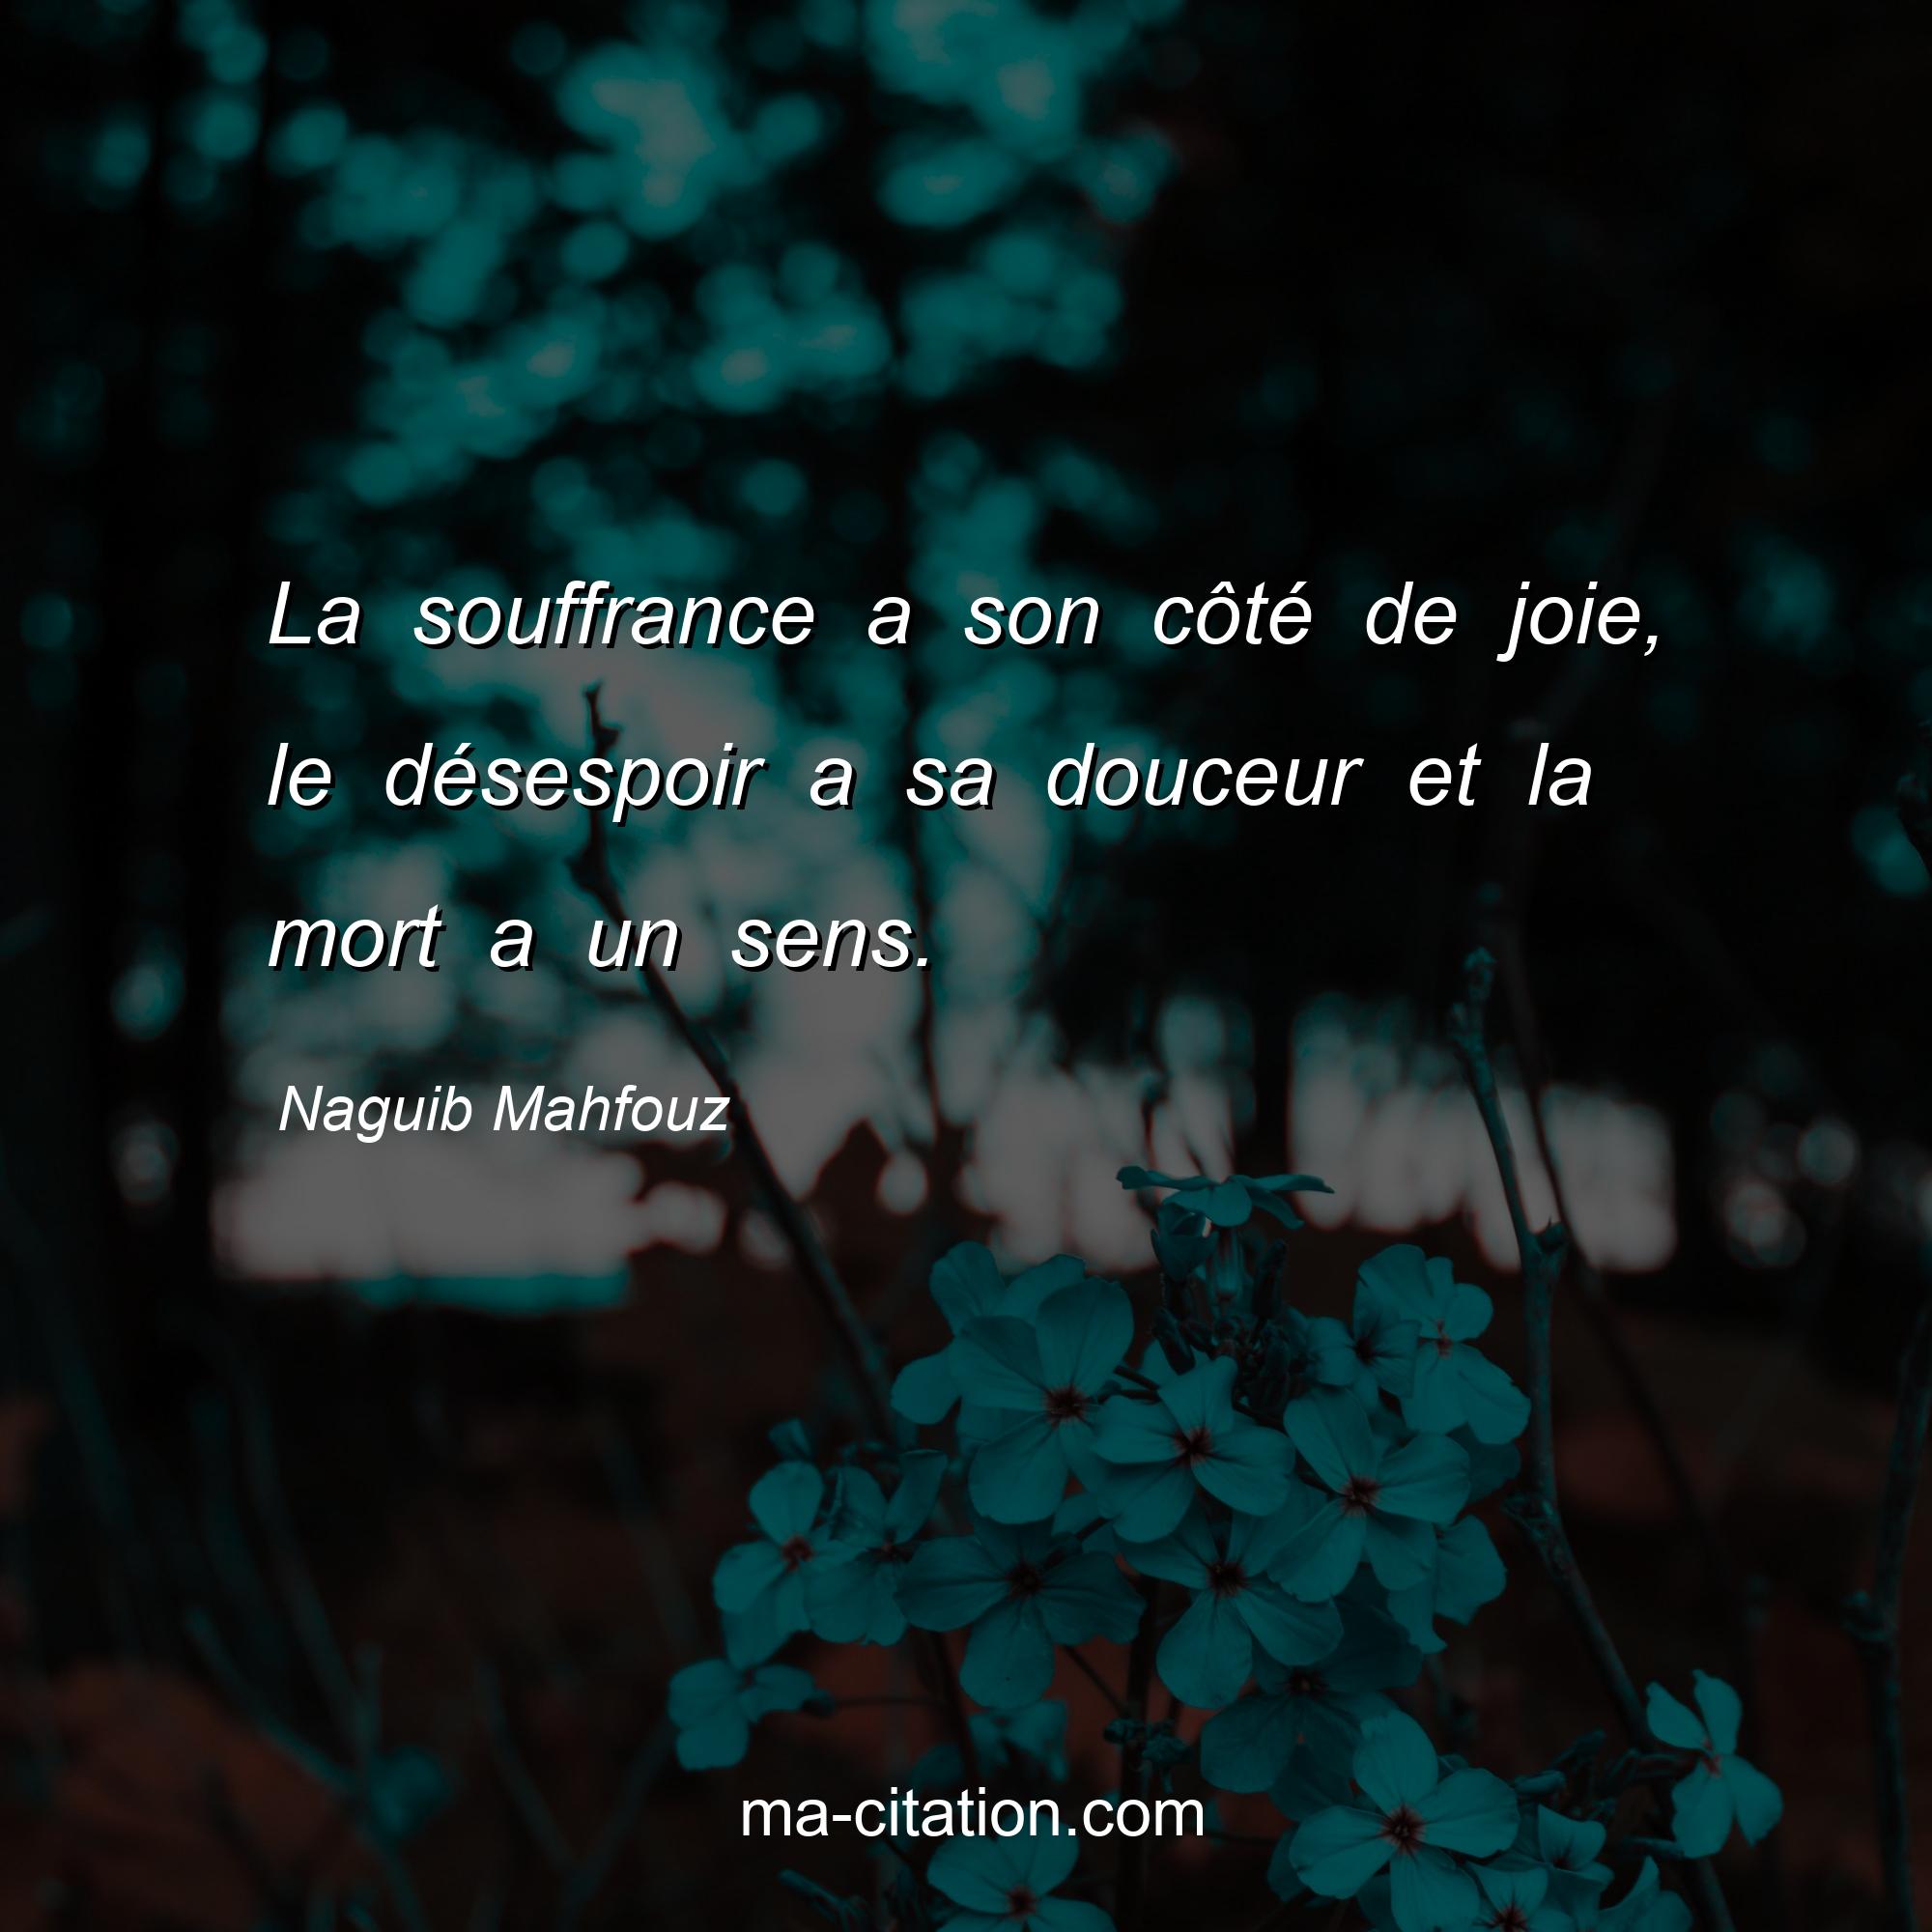 Naguib Mahfouz : La souffrance a son côté de joie, le désespoir a sa douceur et la mort a un sens.